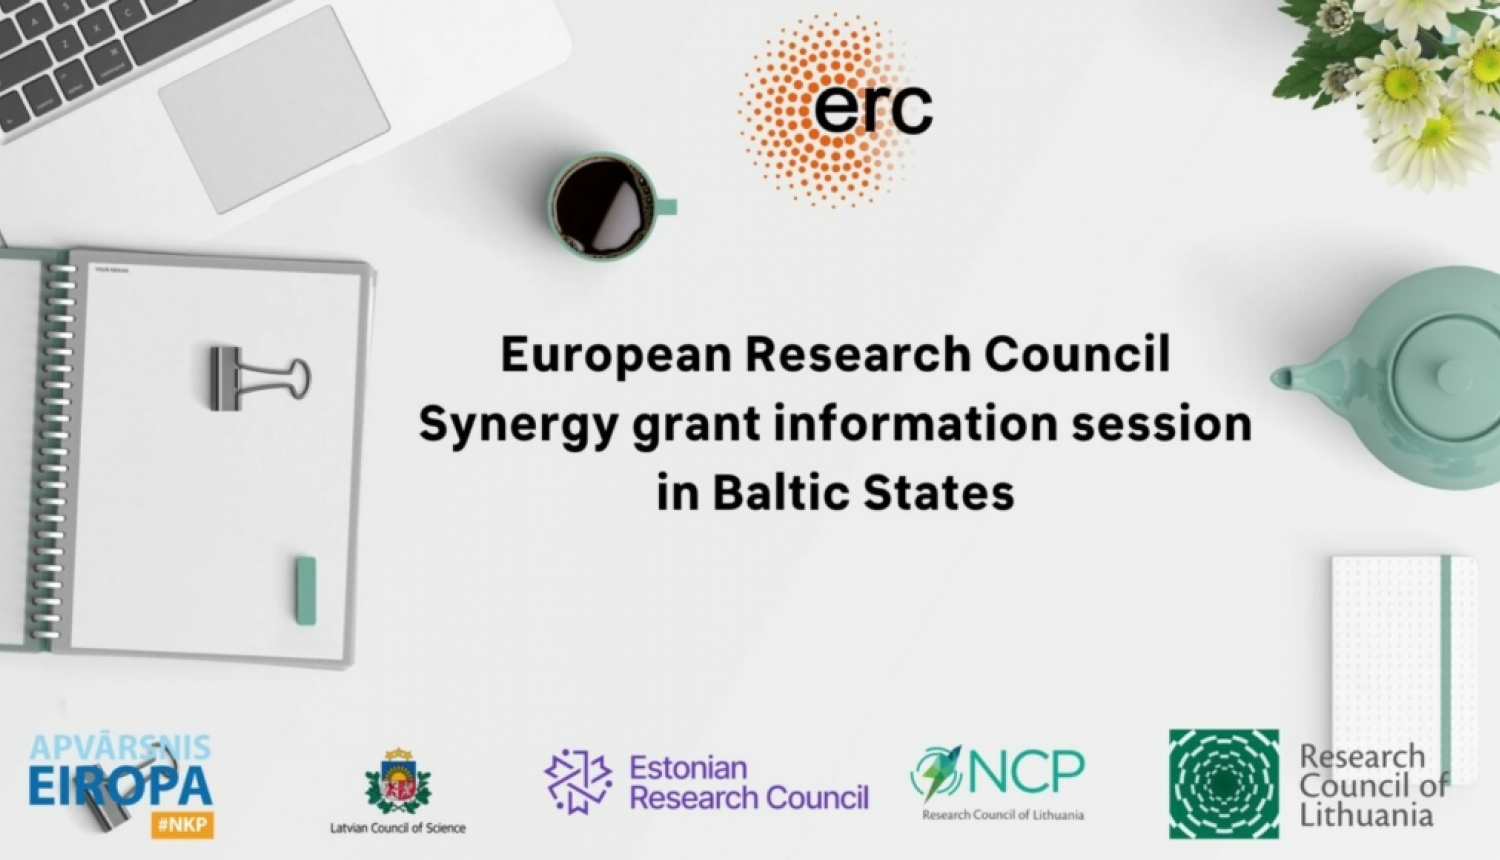 Aicinām uz informācijas dienu par Eiropas Pētniecības padomes Synergy grant shēmu